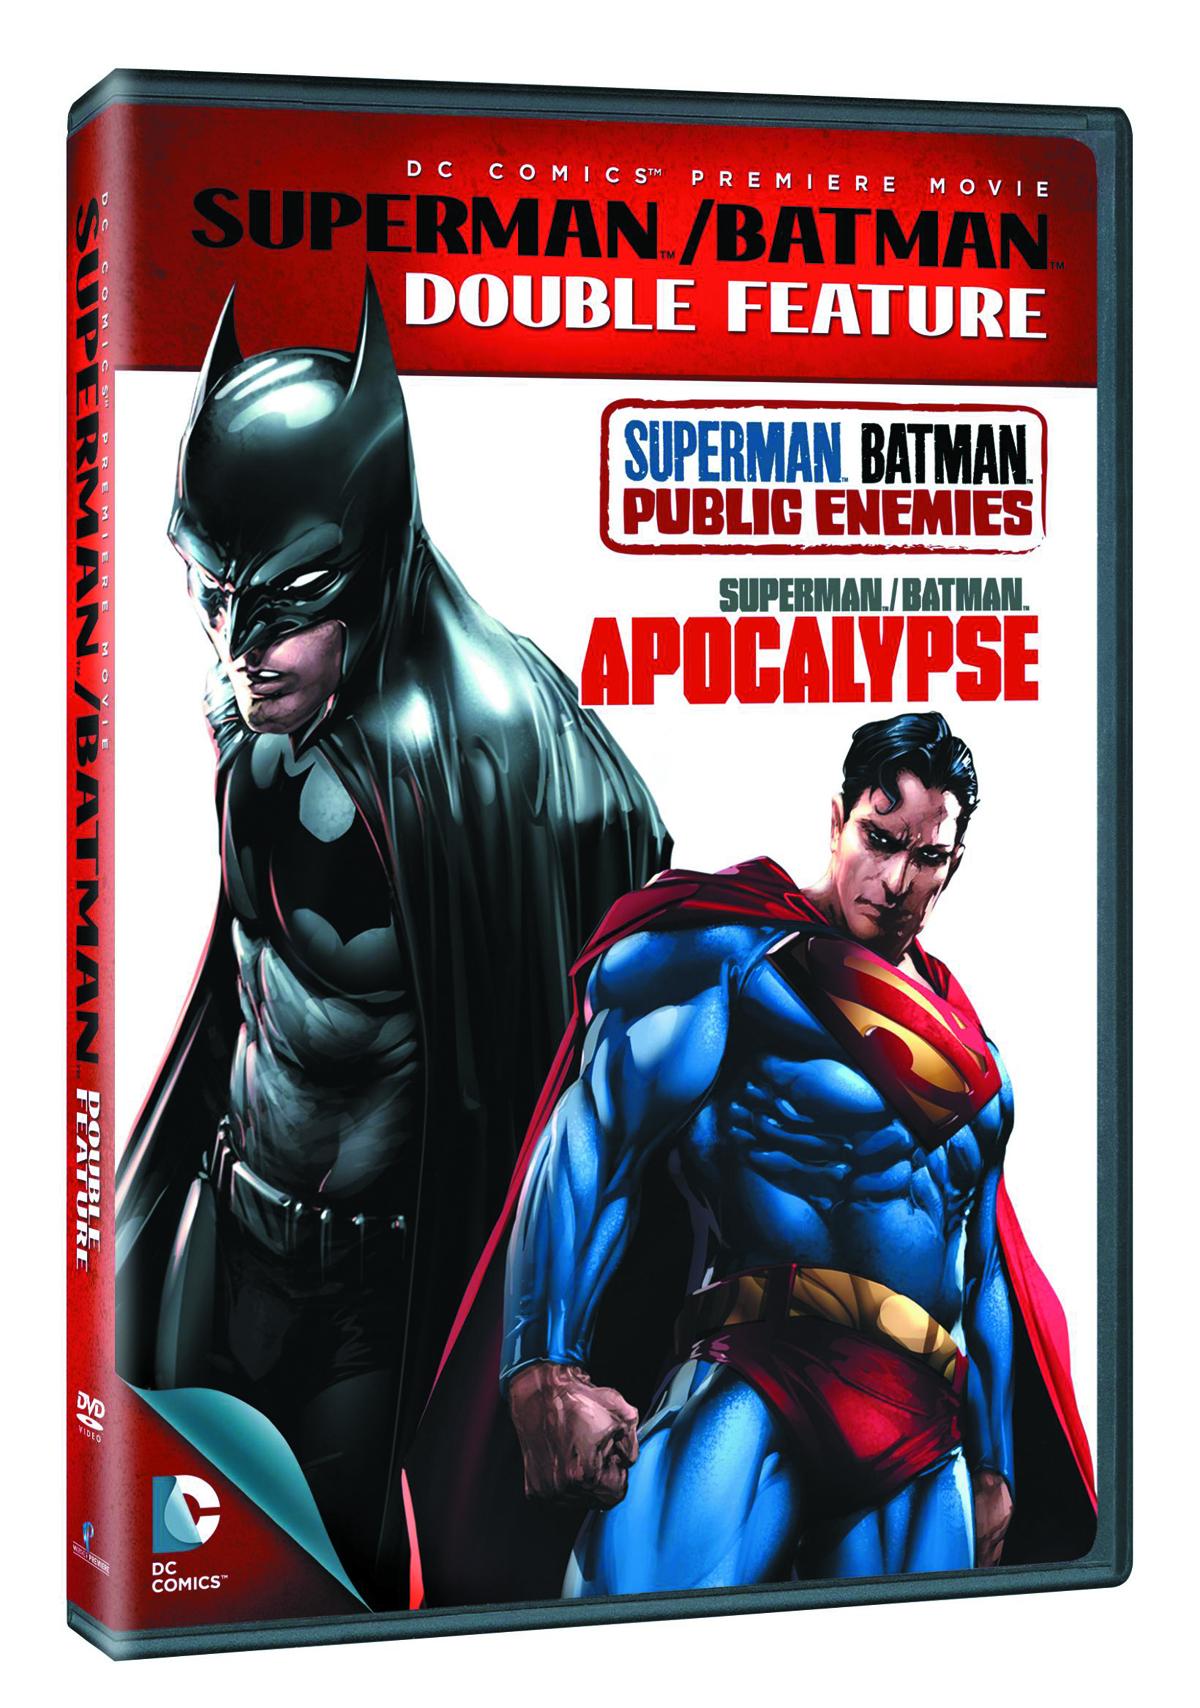 SUPERMAN/BATMAN DOUBLE FEATURE DVD